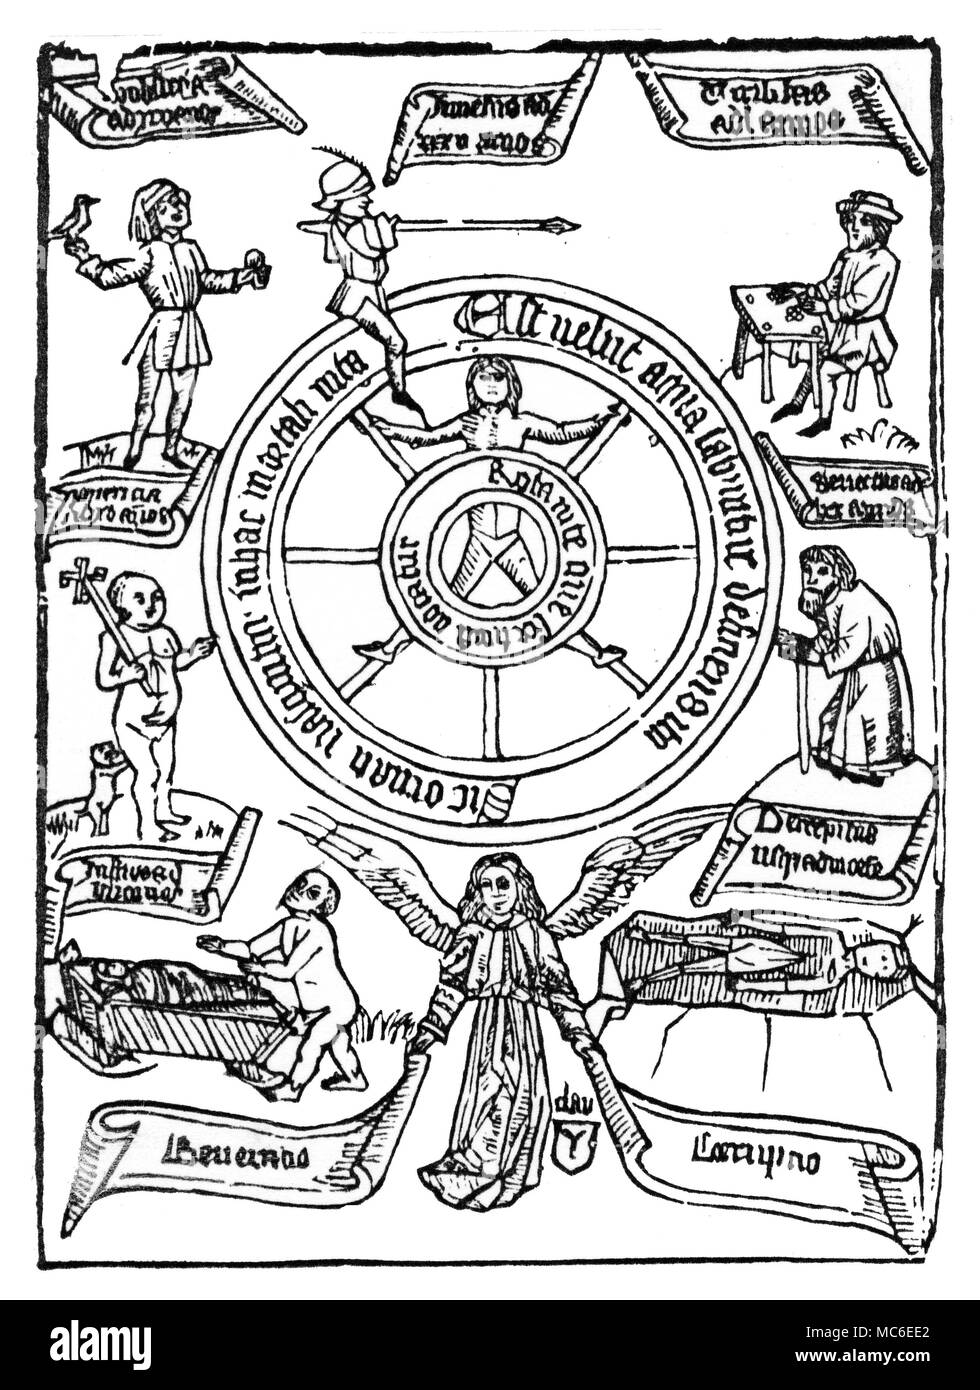 Astrologie - sept âges de l'homme dessin du xixe siècle sur la base d'un 15e siècle imprimer blockbuch, représentant les sept étapes de la vie humaine. À partir de la partie inférieure gauche, dans le sens horaire, l'enfant l'apprentissage de la marche, l'enfant (probablement) sur le chemin de l'école, le jeune homme à plaisir, le jeune homme (avec lance) apprendre l'art de la guerre, l'homme mûr dans un bureau de dépouillement, le semblant d'homme, et le corps mort dans la tombe. Frontispice à John Timbs, Mystères de la vie, de la mort et de l'avenir, 1880. Banque D'Images